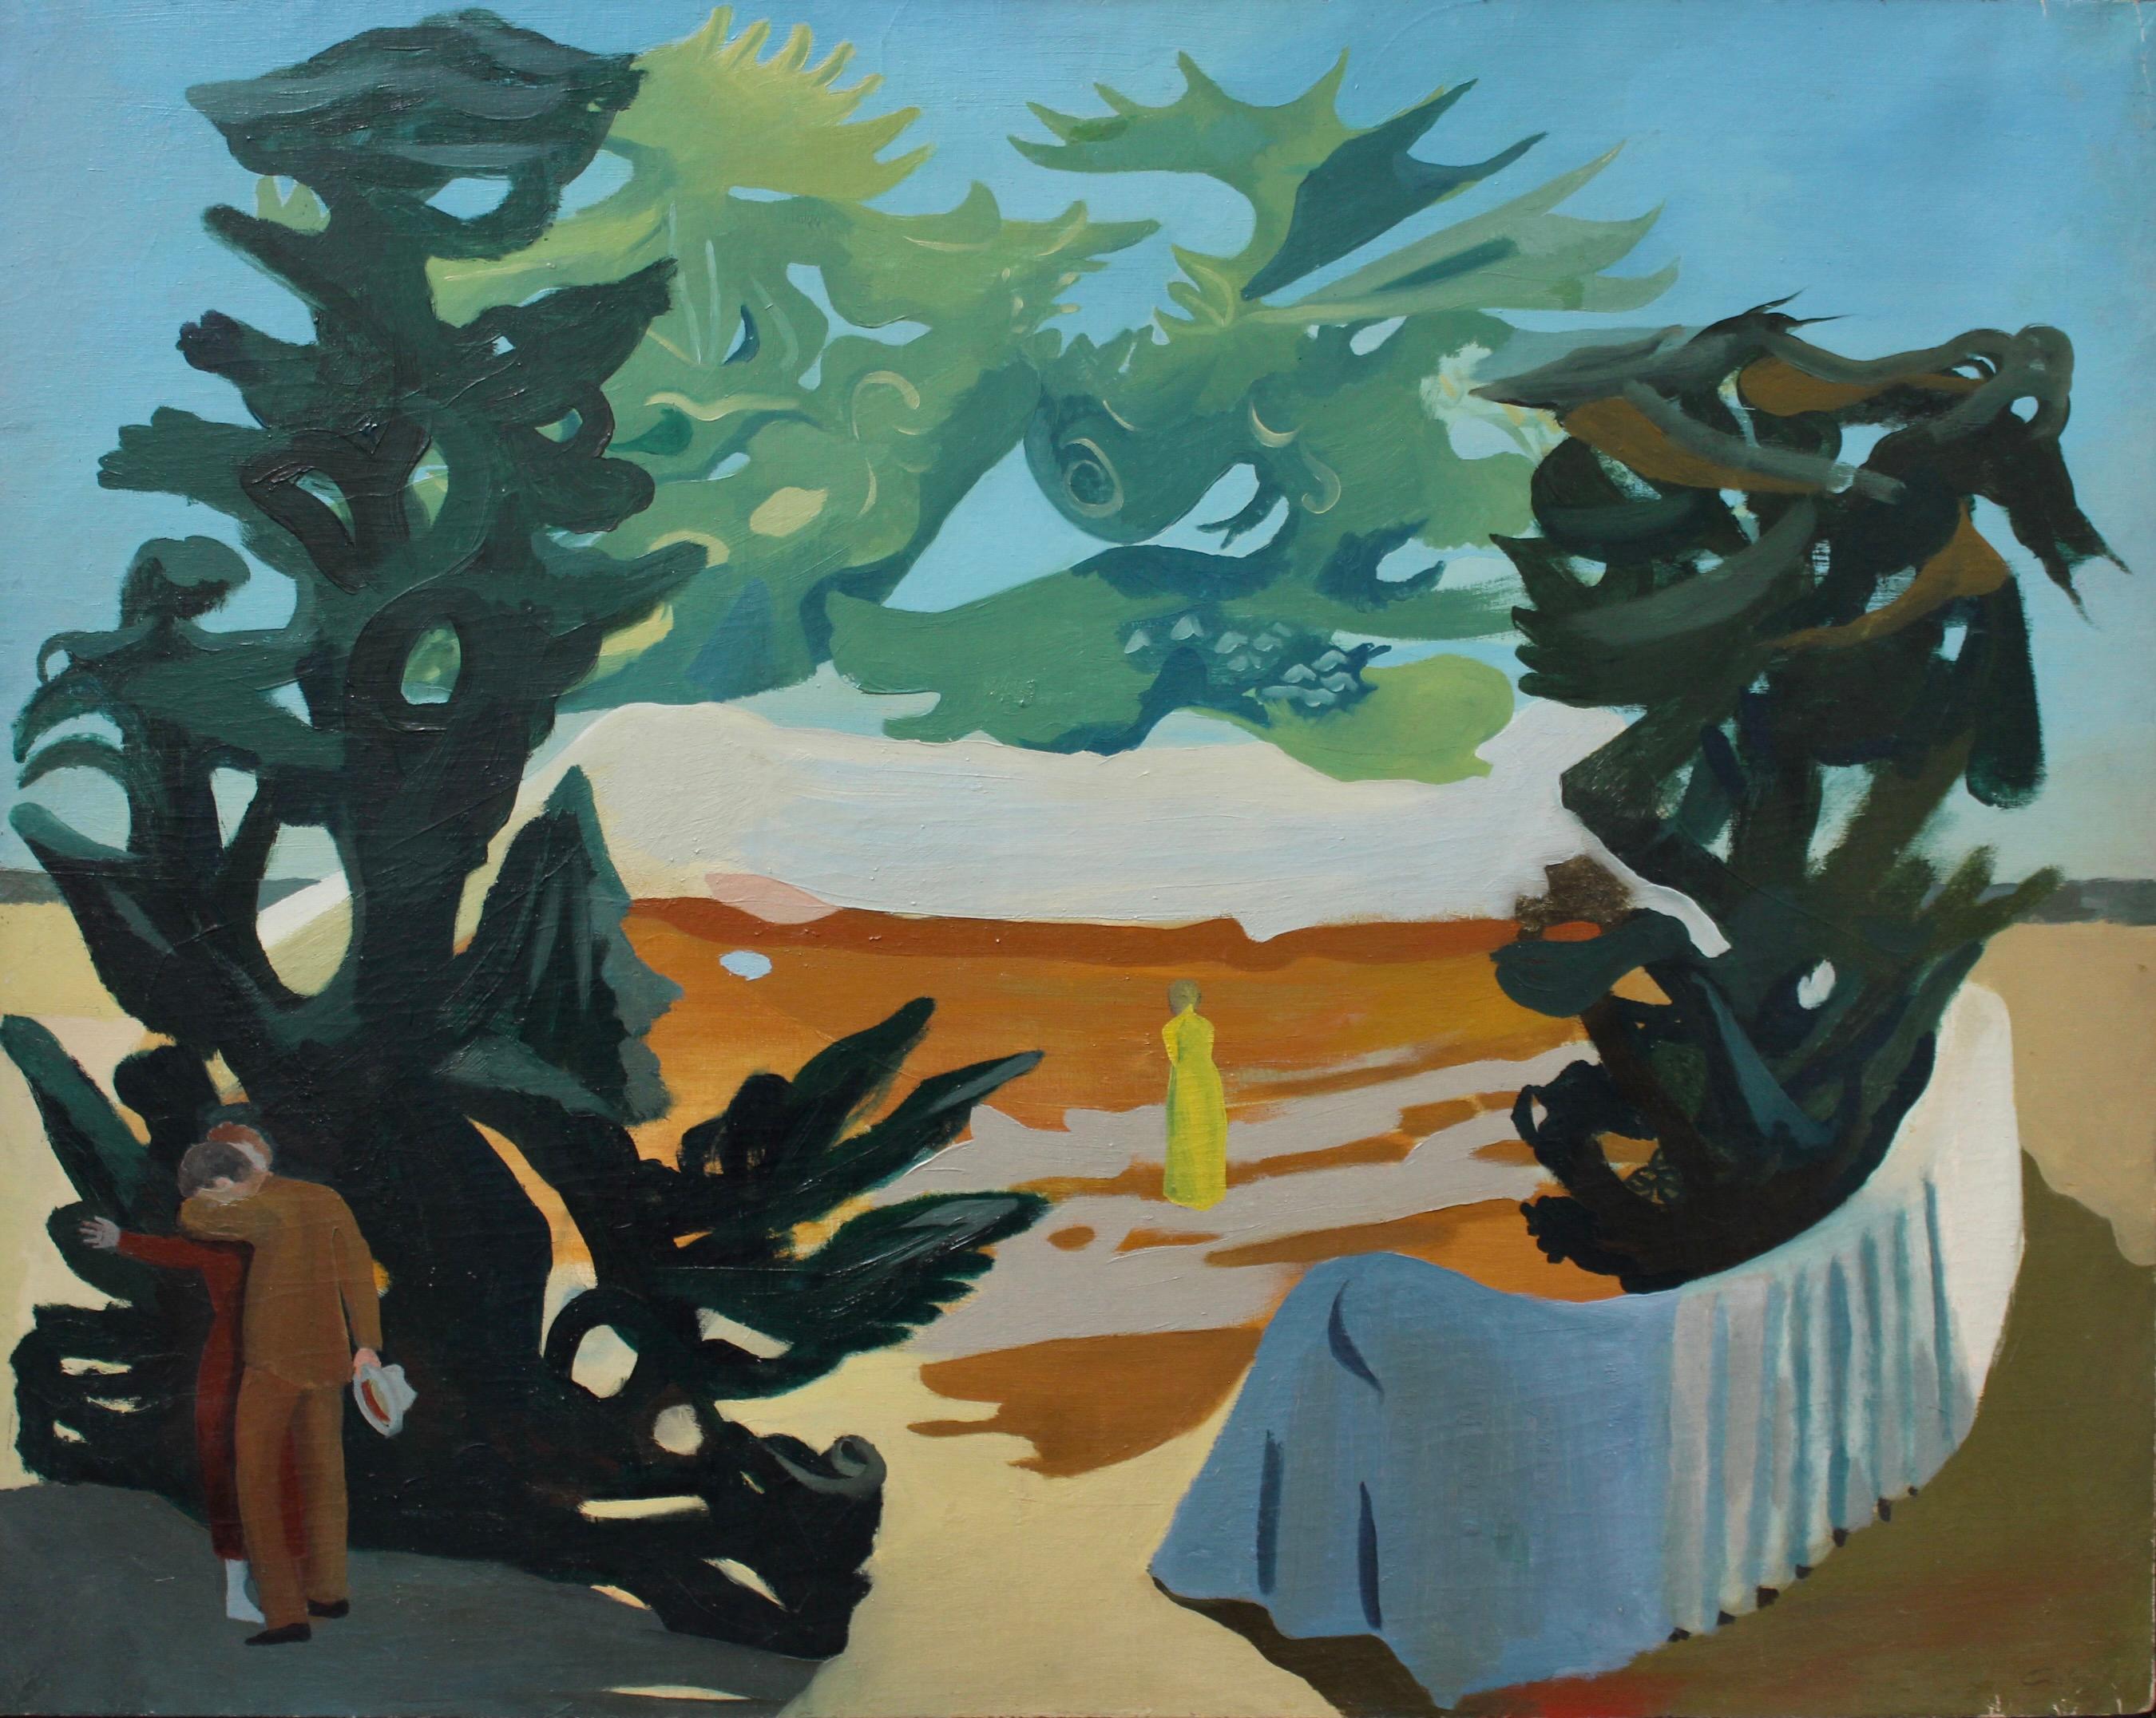 Lucien Coutaud Landscape Painting – Charaktere in einer surrealistischen Landschaft